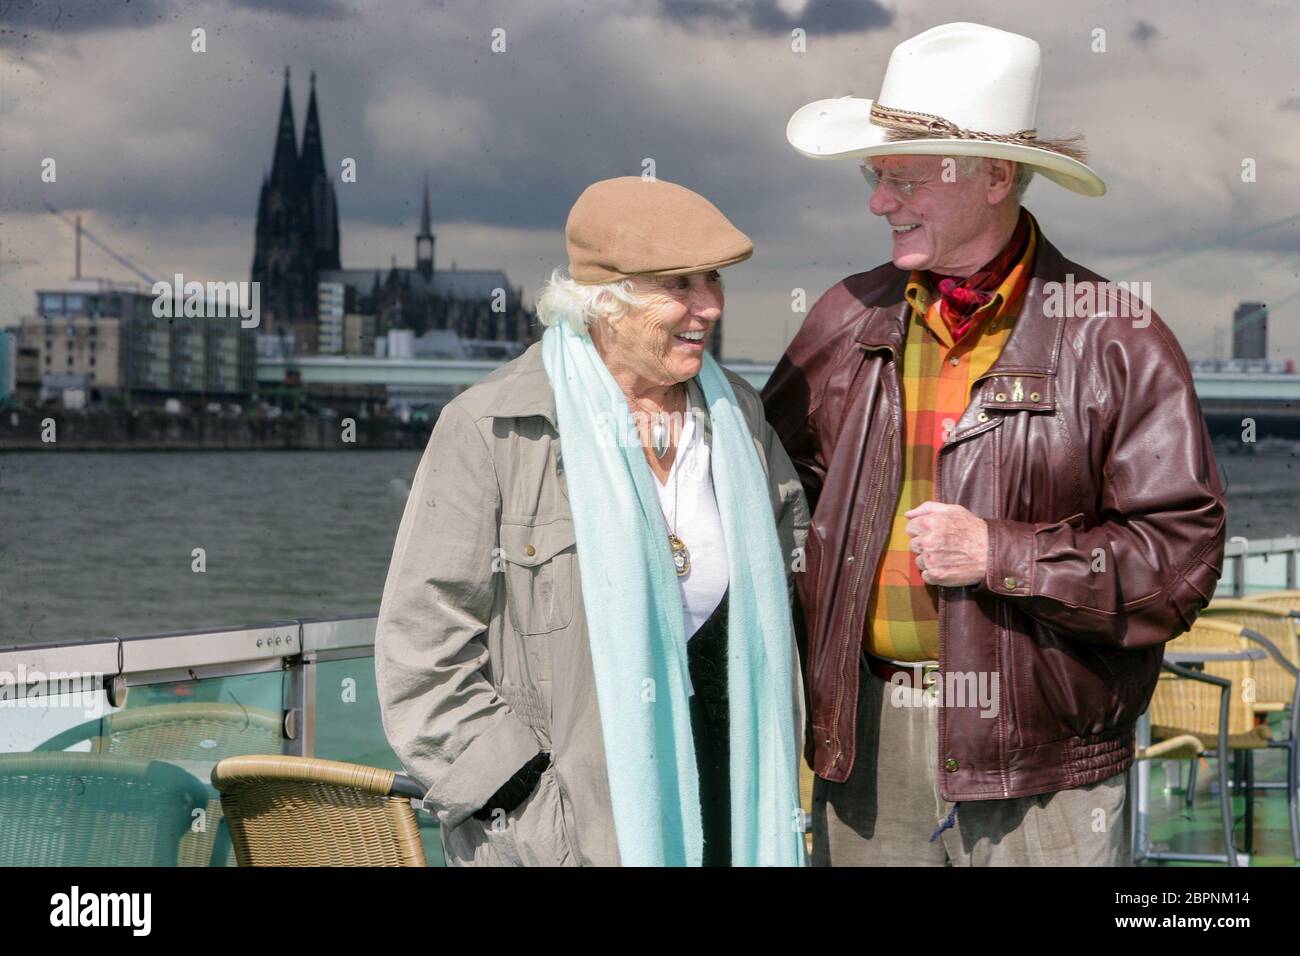 Larry Hagman - Rundfahrt auf dem Rhein - Der US-amerikanischer Schauspieler Larry Hagman alias J. R. Ewing (Dallas) und seine Ehefrau Maj Axelsson zu Besuch in Köln. Rundfahrt mit einem KD Schiff auf dem Rhein. Stock Photo